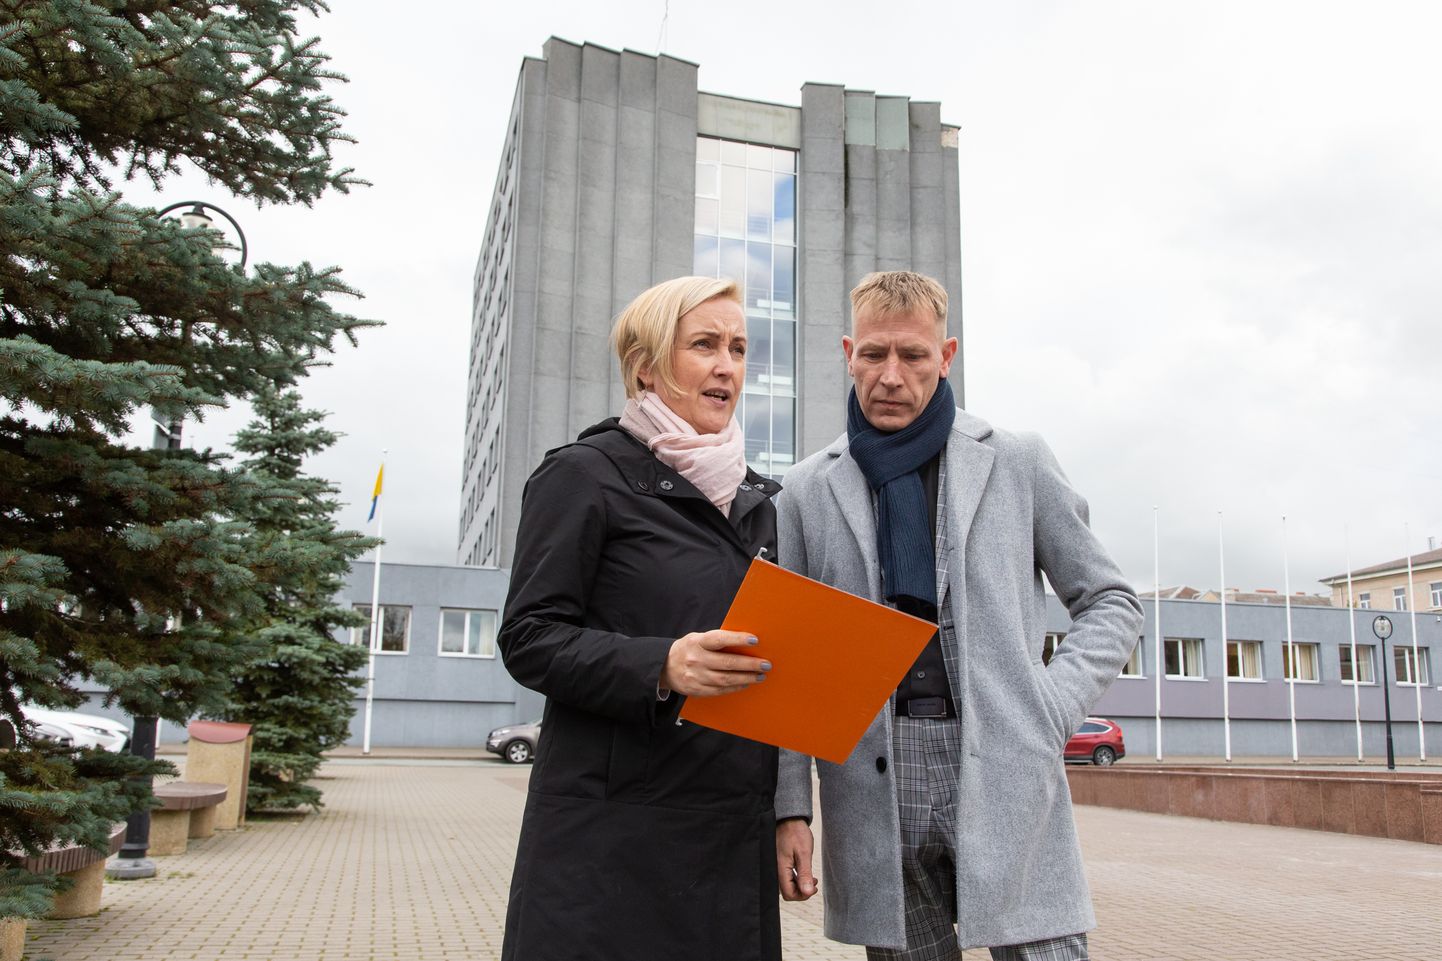 Янек Пахка заключил соглашение о сотрудничестве своего избирательного союза с руководителем партии "Эстония 200" Кристиной Каллас еще в октябре 2020 года.